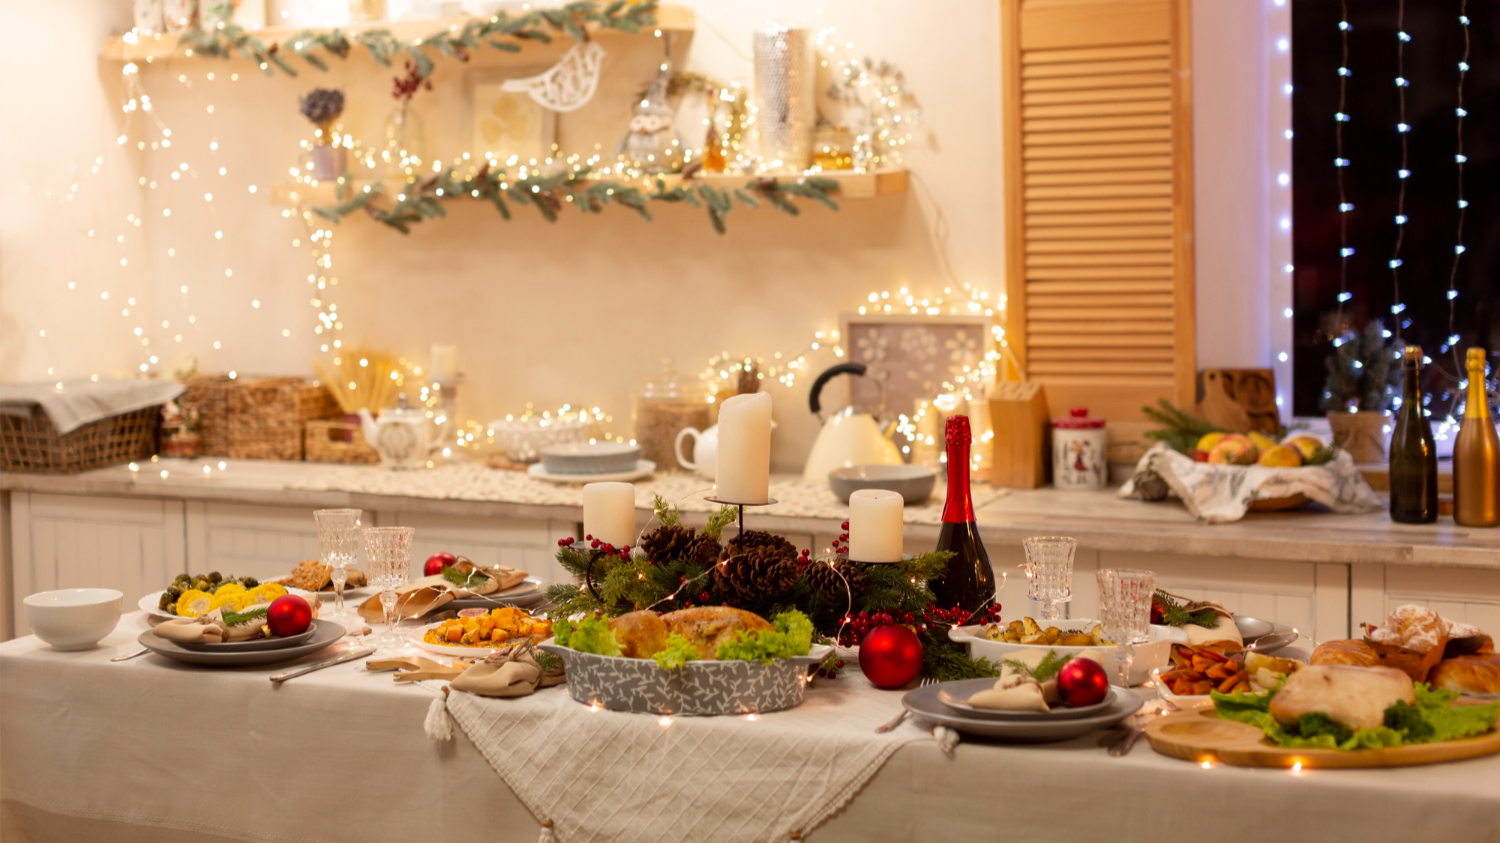 Блюда на праздничный стол: примеры меню из вкусных и красивых блюд | CaterMe